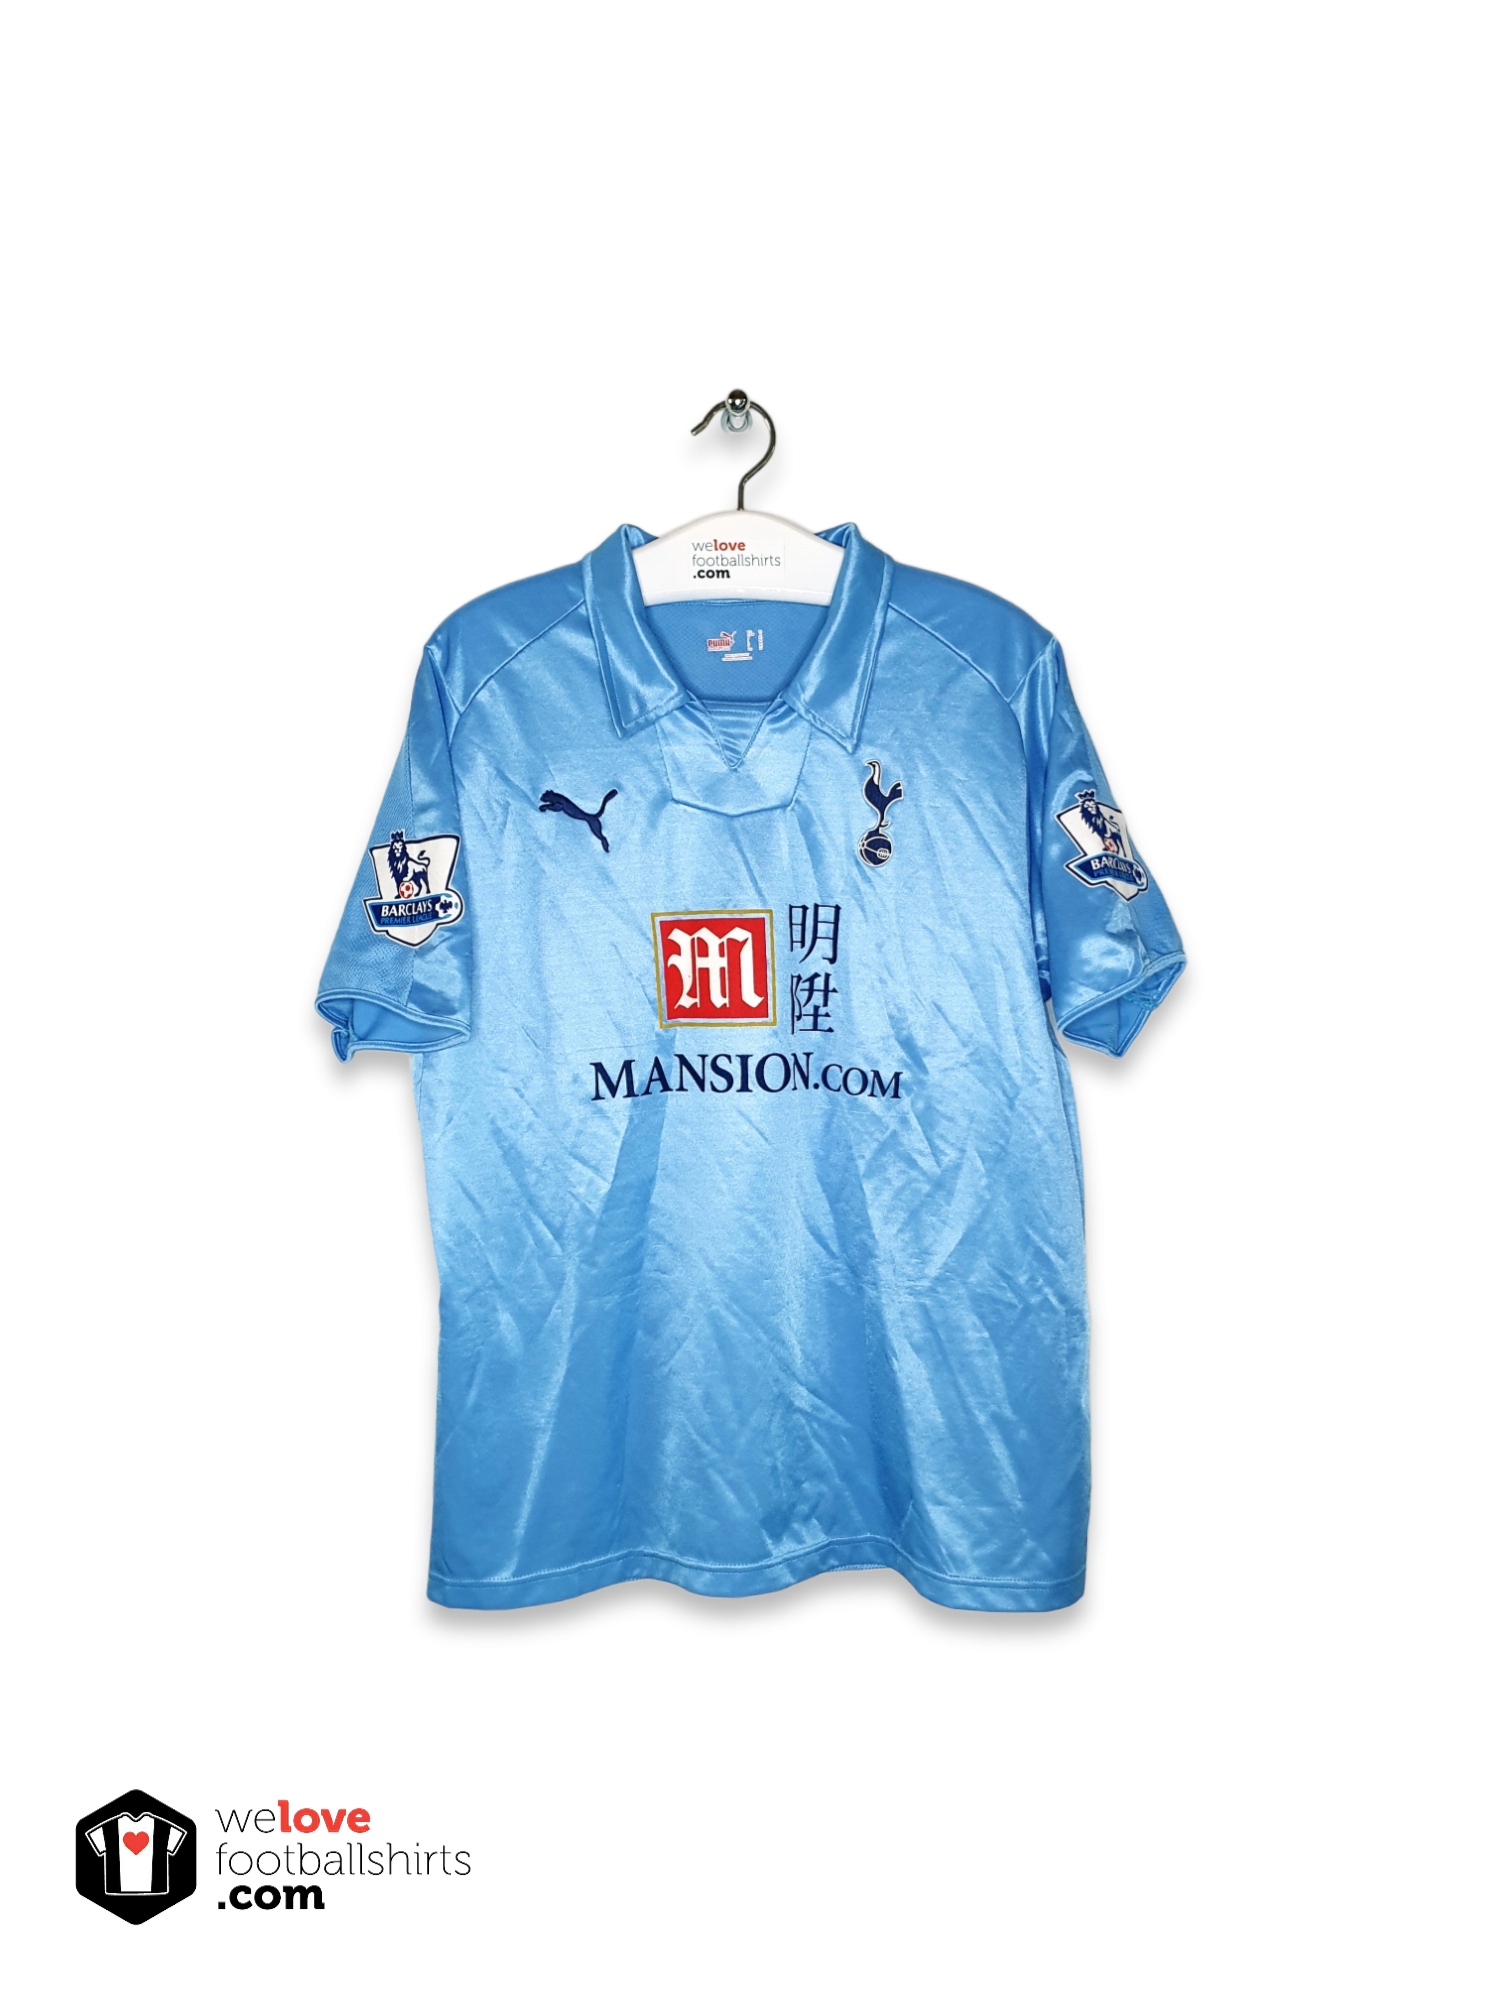 Tottenham Hotspur 2008 2009 third Sz L shirt jersey soccer kit 3rd